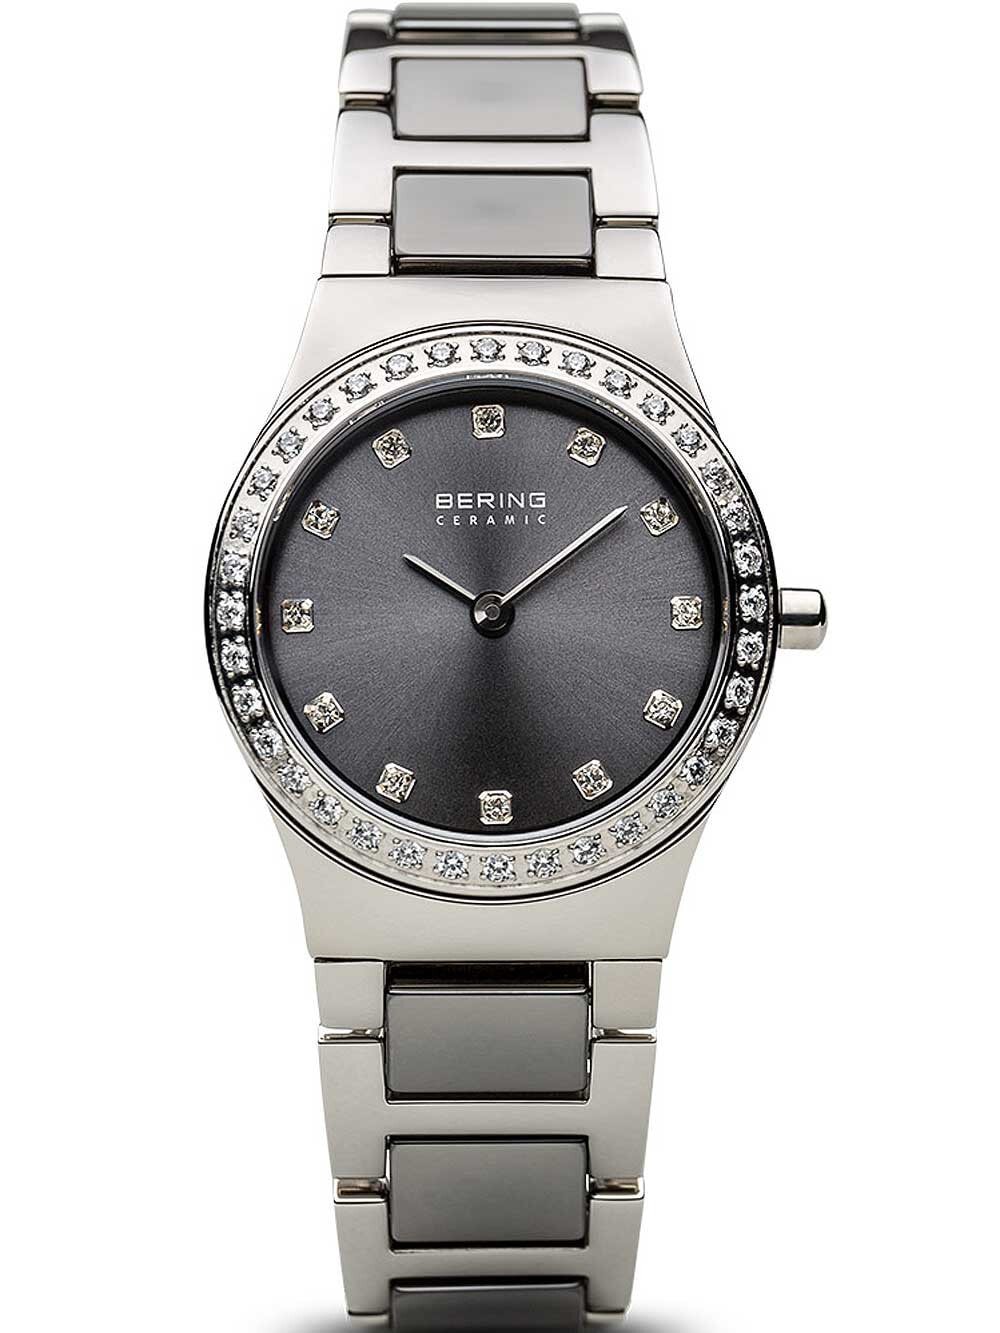 Женские наручные кварцевые часы  Bering  браслет стальной с керамическими вставками. Циферблат украшены кристаллами Swarovski.